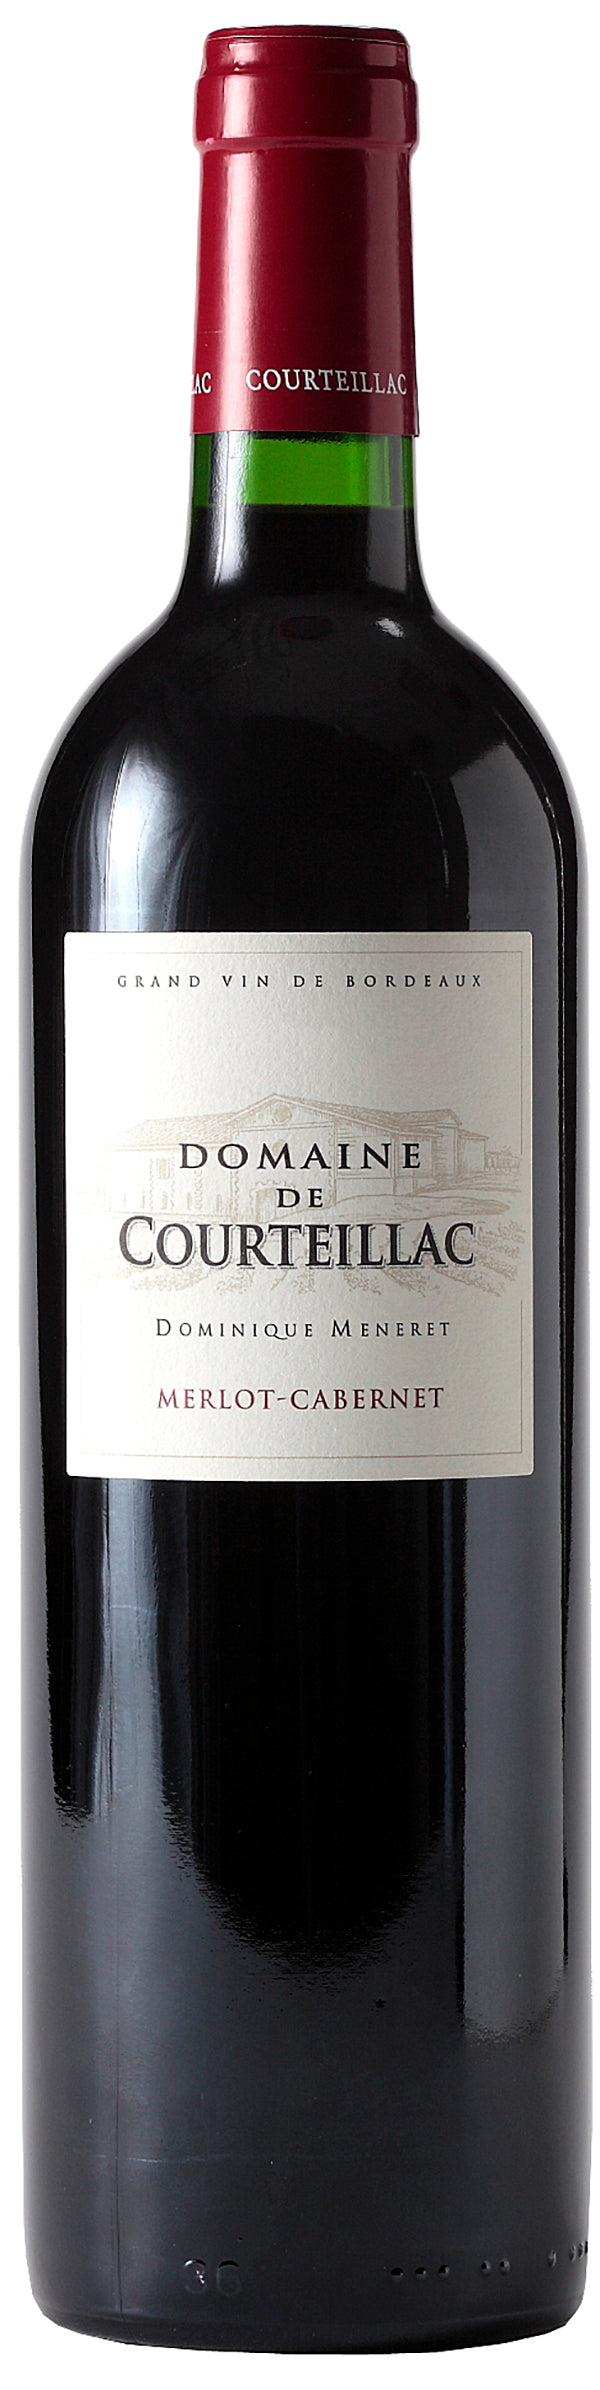 Domaine de Courteillac Bordeaux Superieur 2015